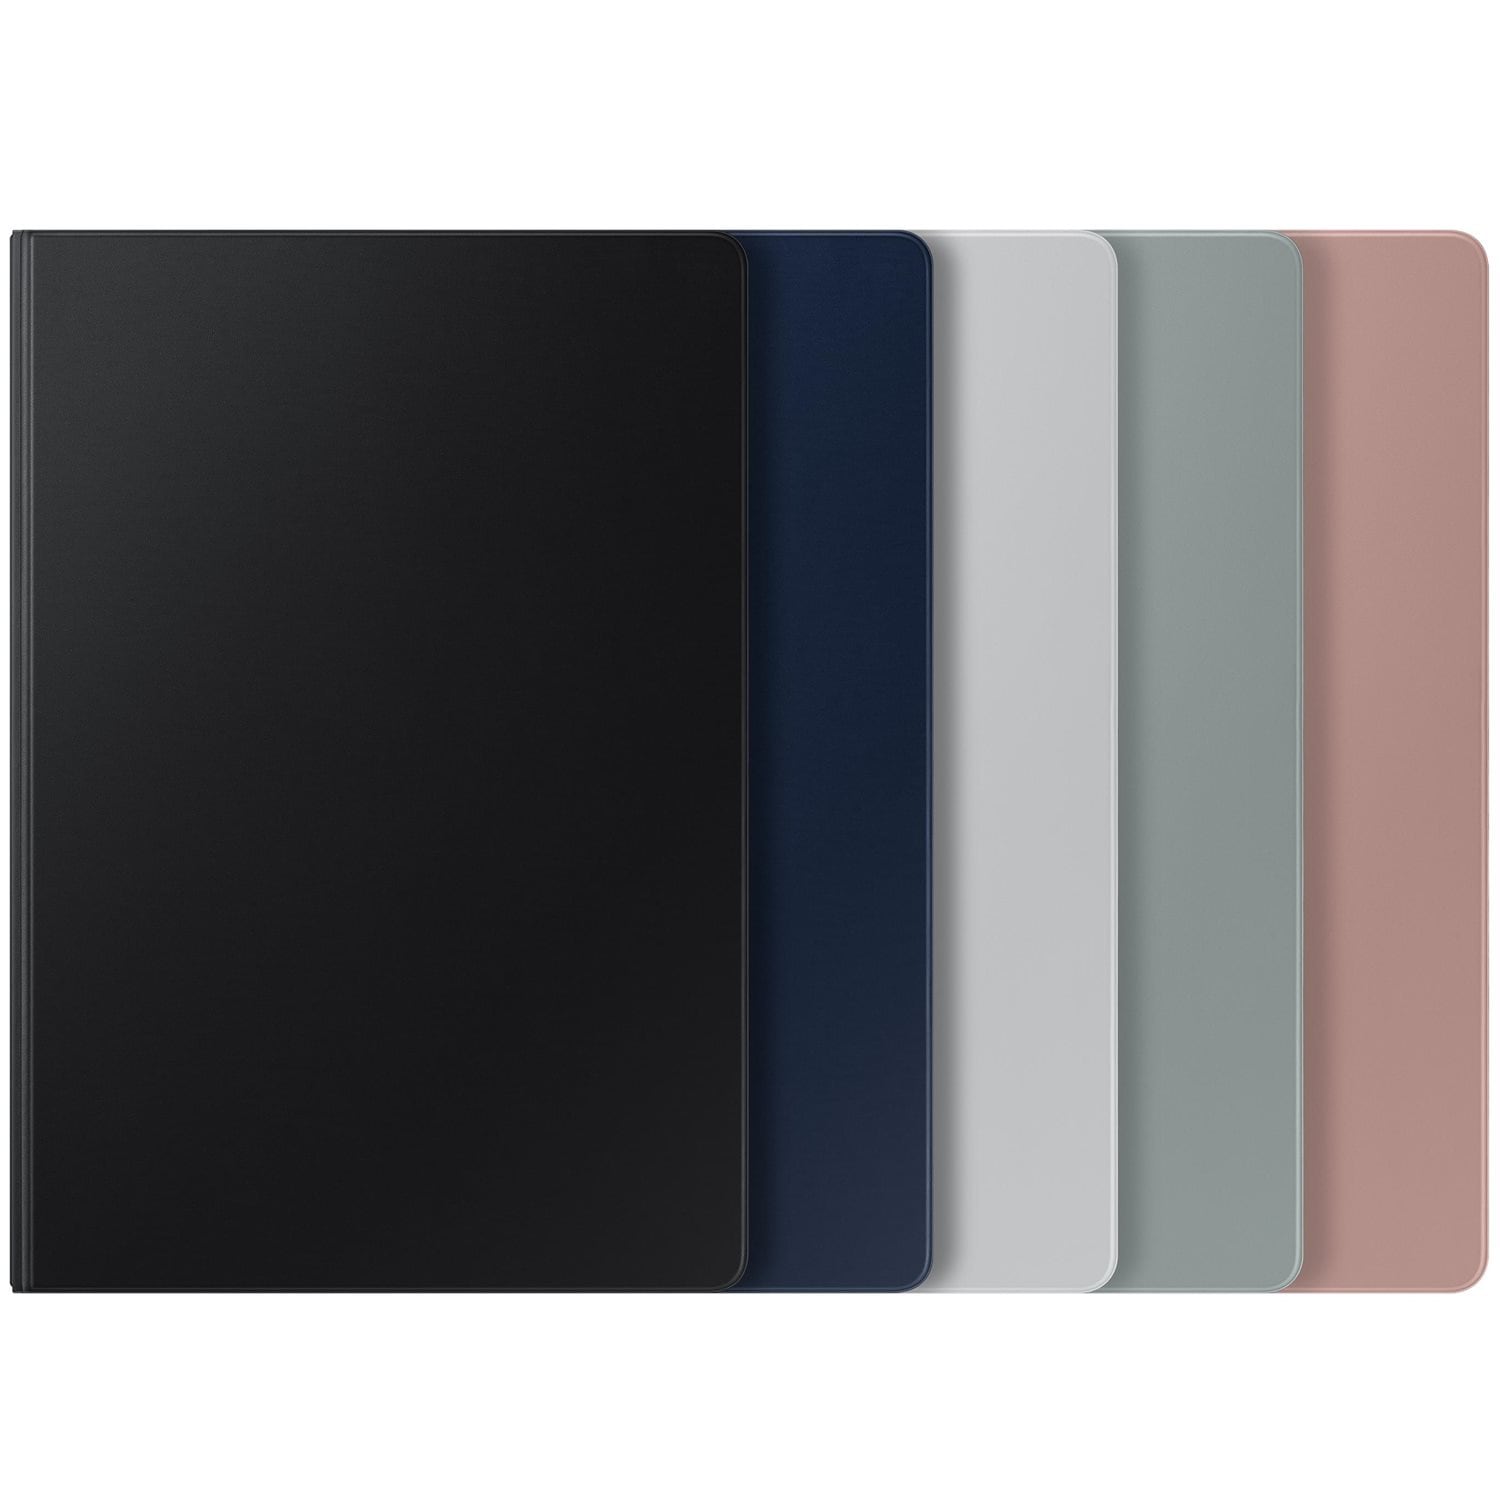 Ammirate il nuovo Galaxy Tab S7 Lite nelle sue quattro colorazioni (foto)